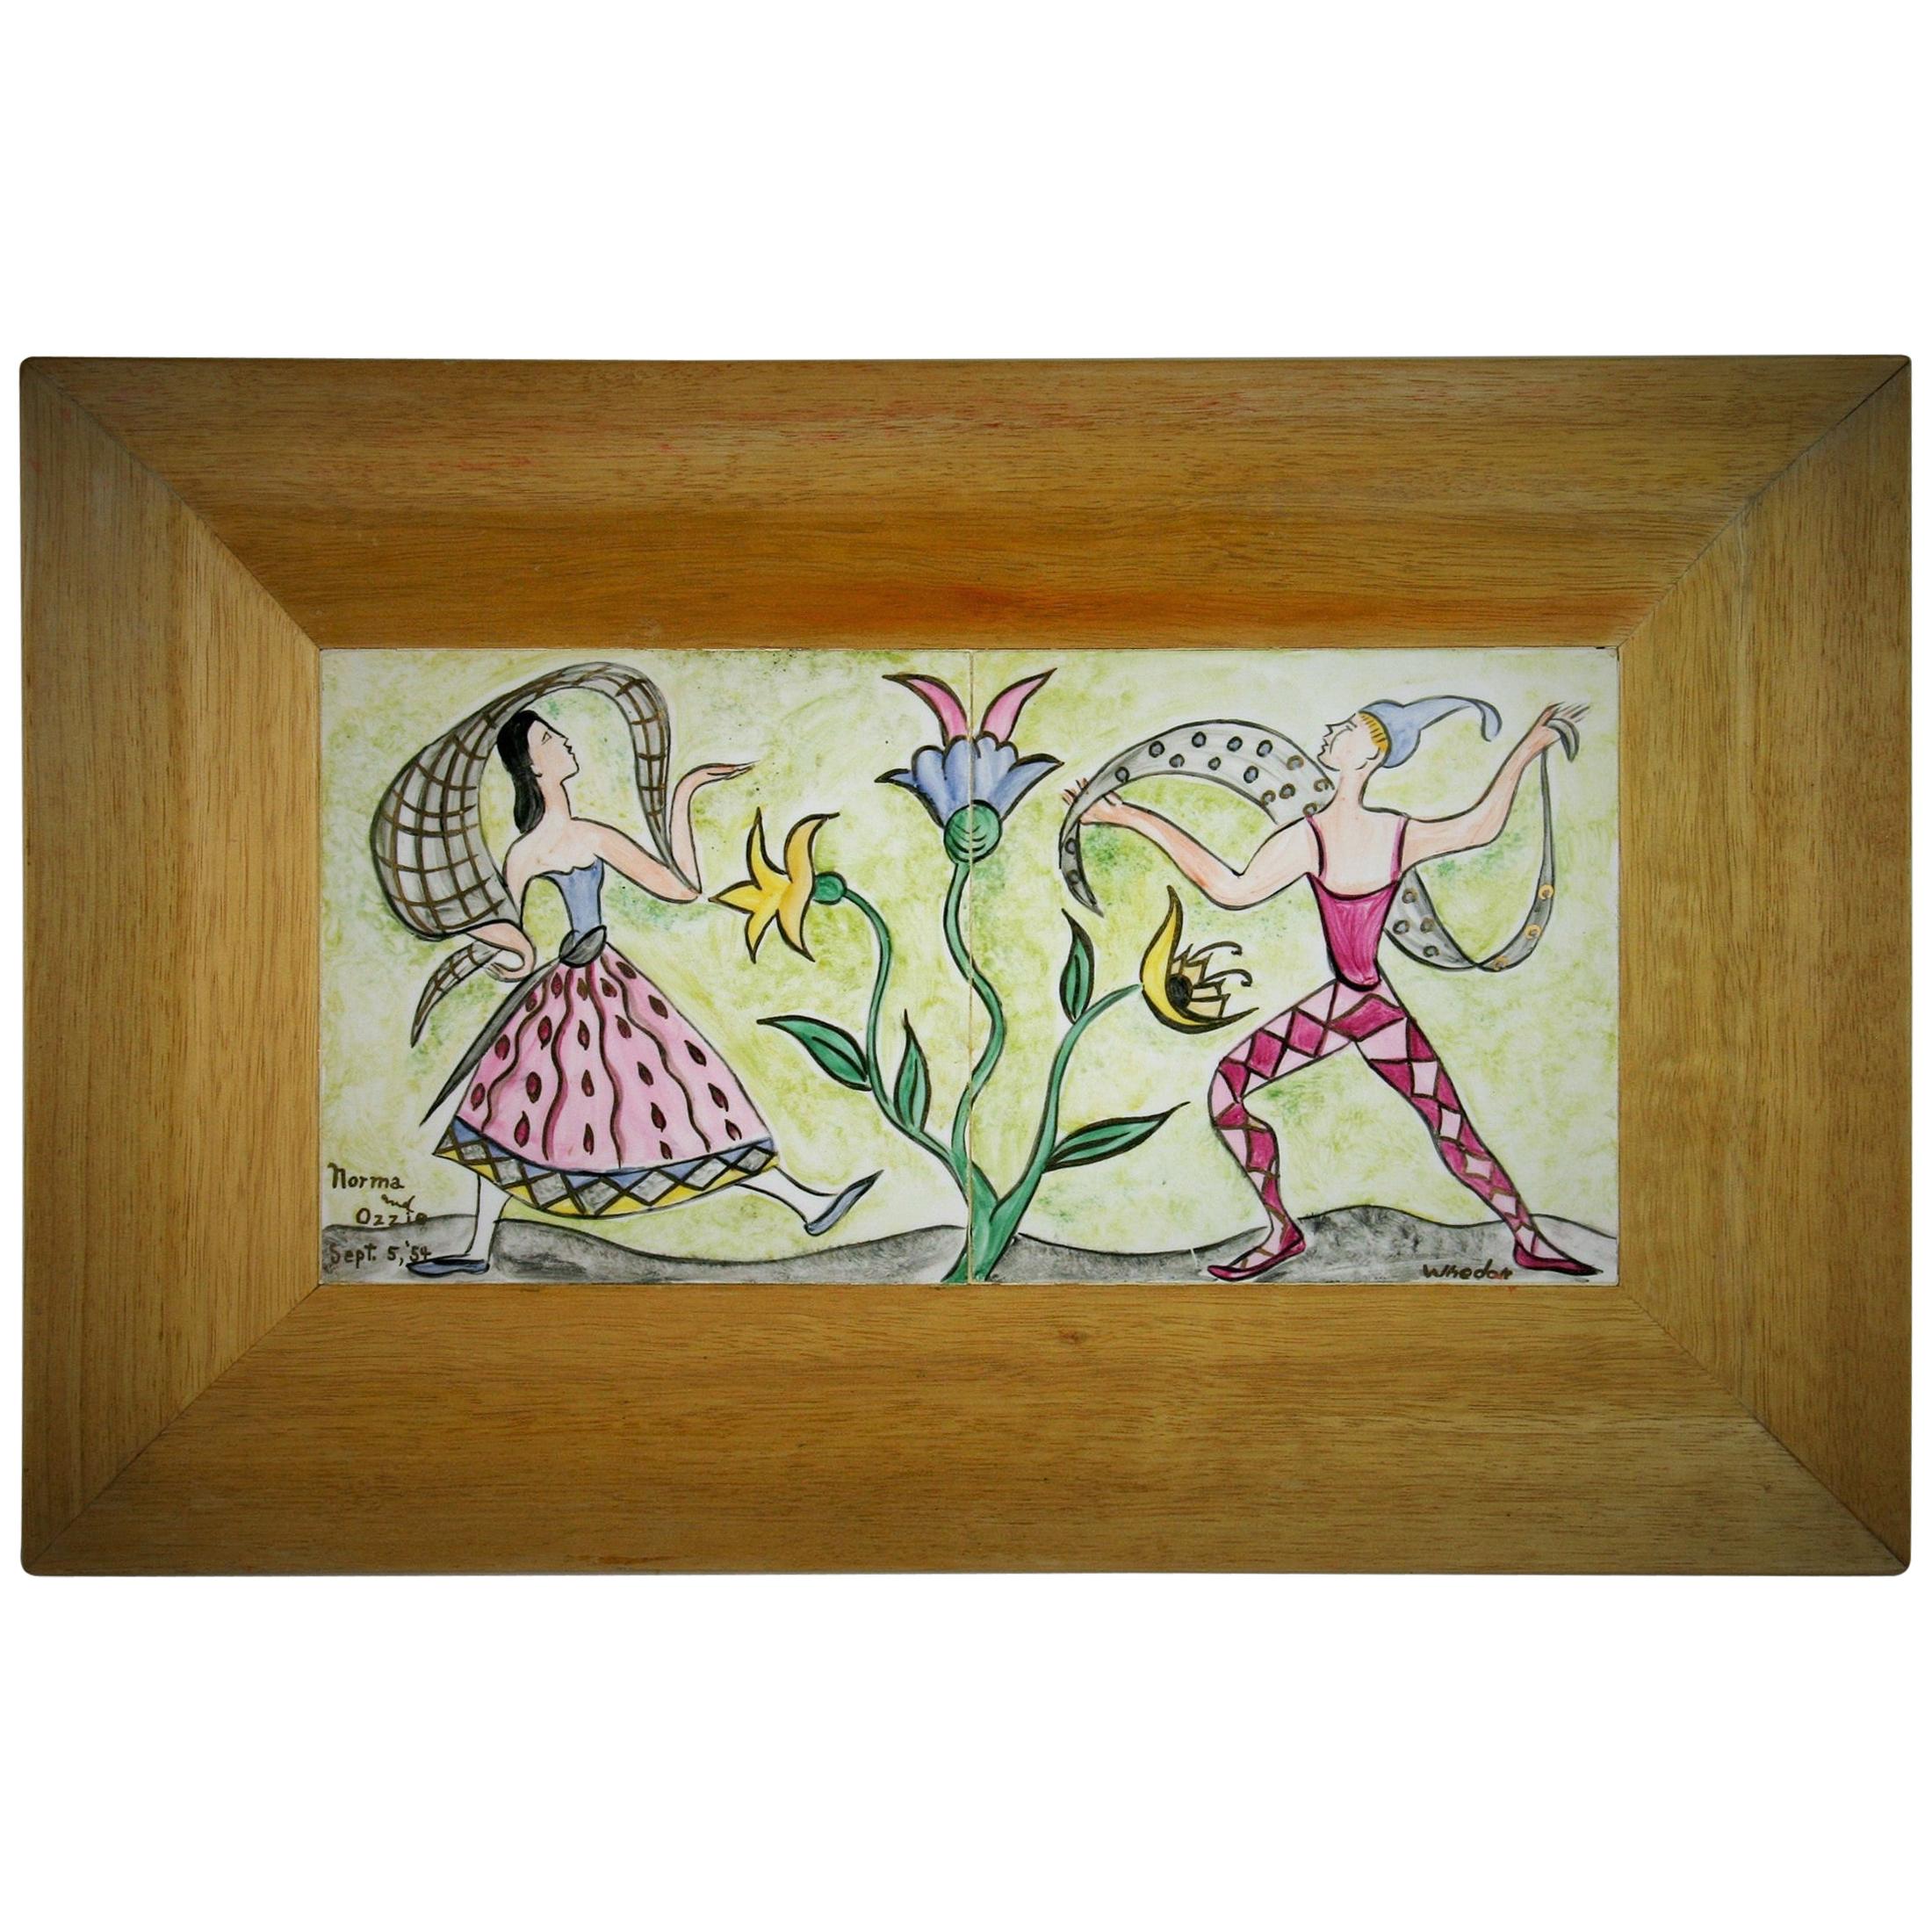 Panneau en céramique d'artisanat - Danser au jardin, 1954